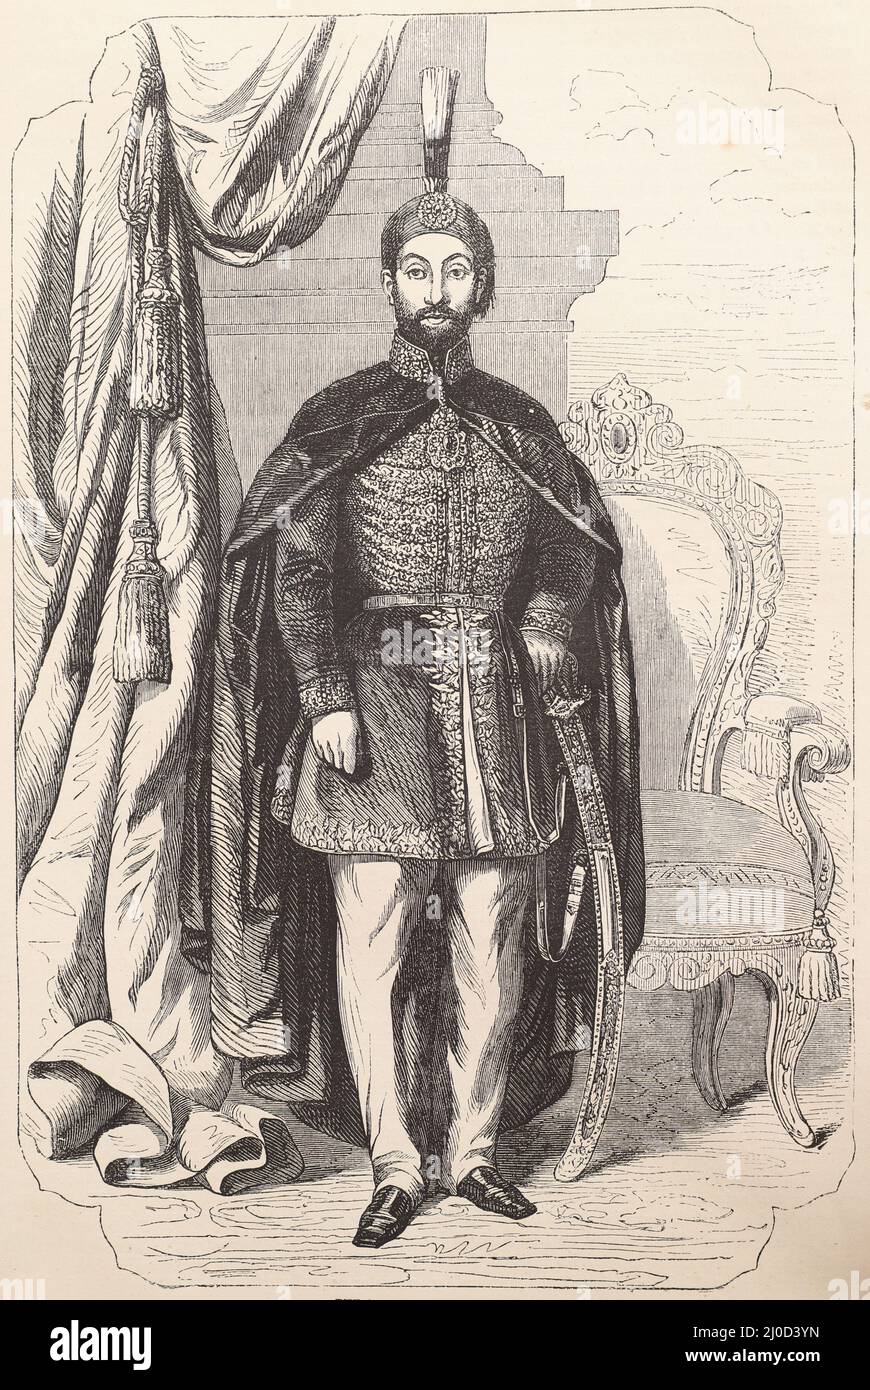 Retrato del Sultán Abdulmejid I, Gobernante del Imperio Otomano, 1839 a 1861, Ilustración en blanco y negro Foto de stock